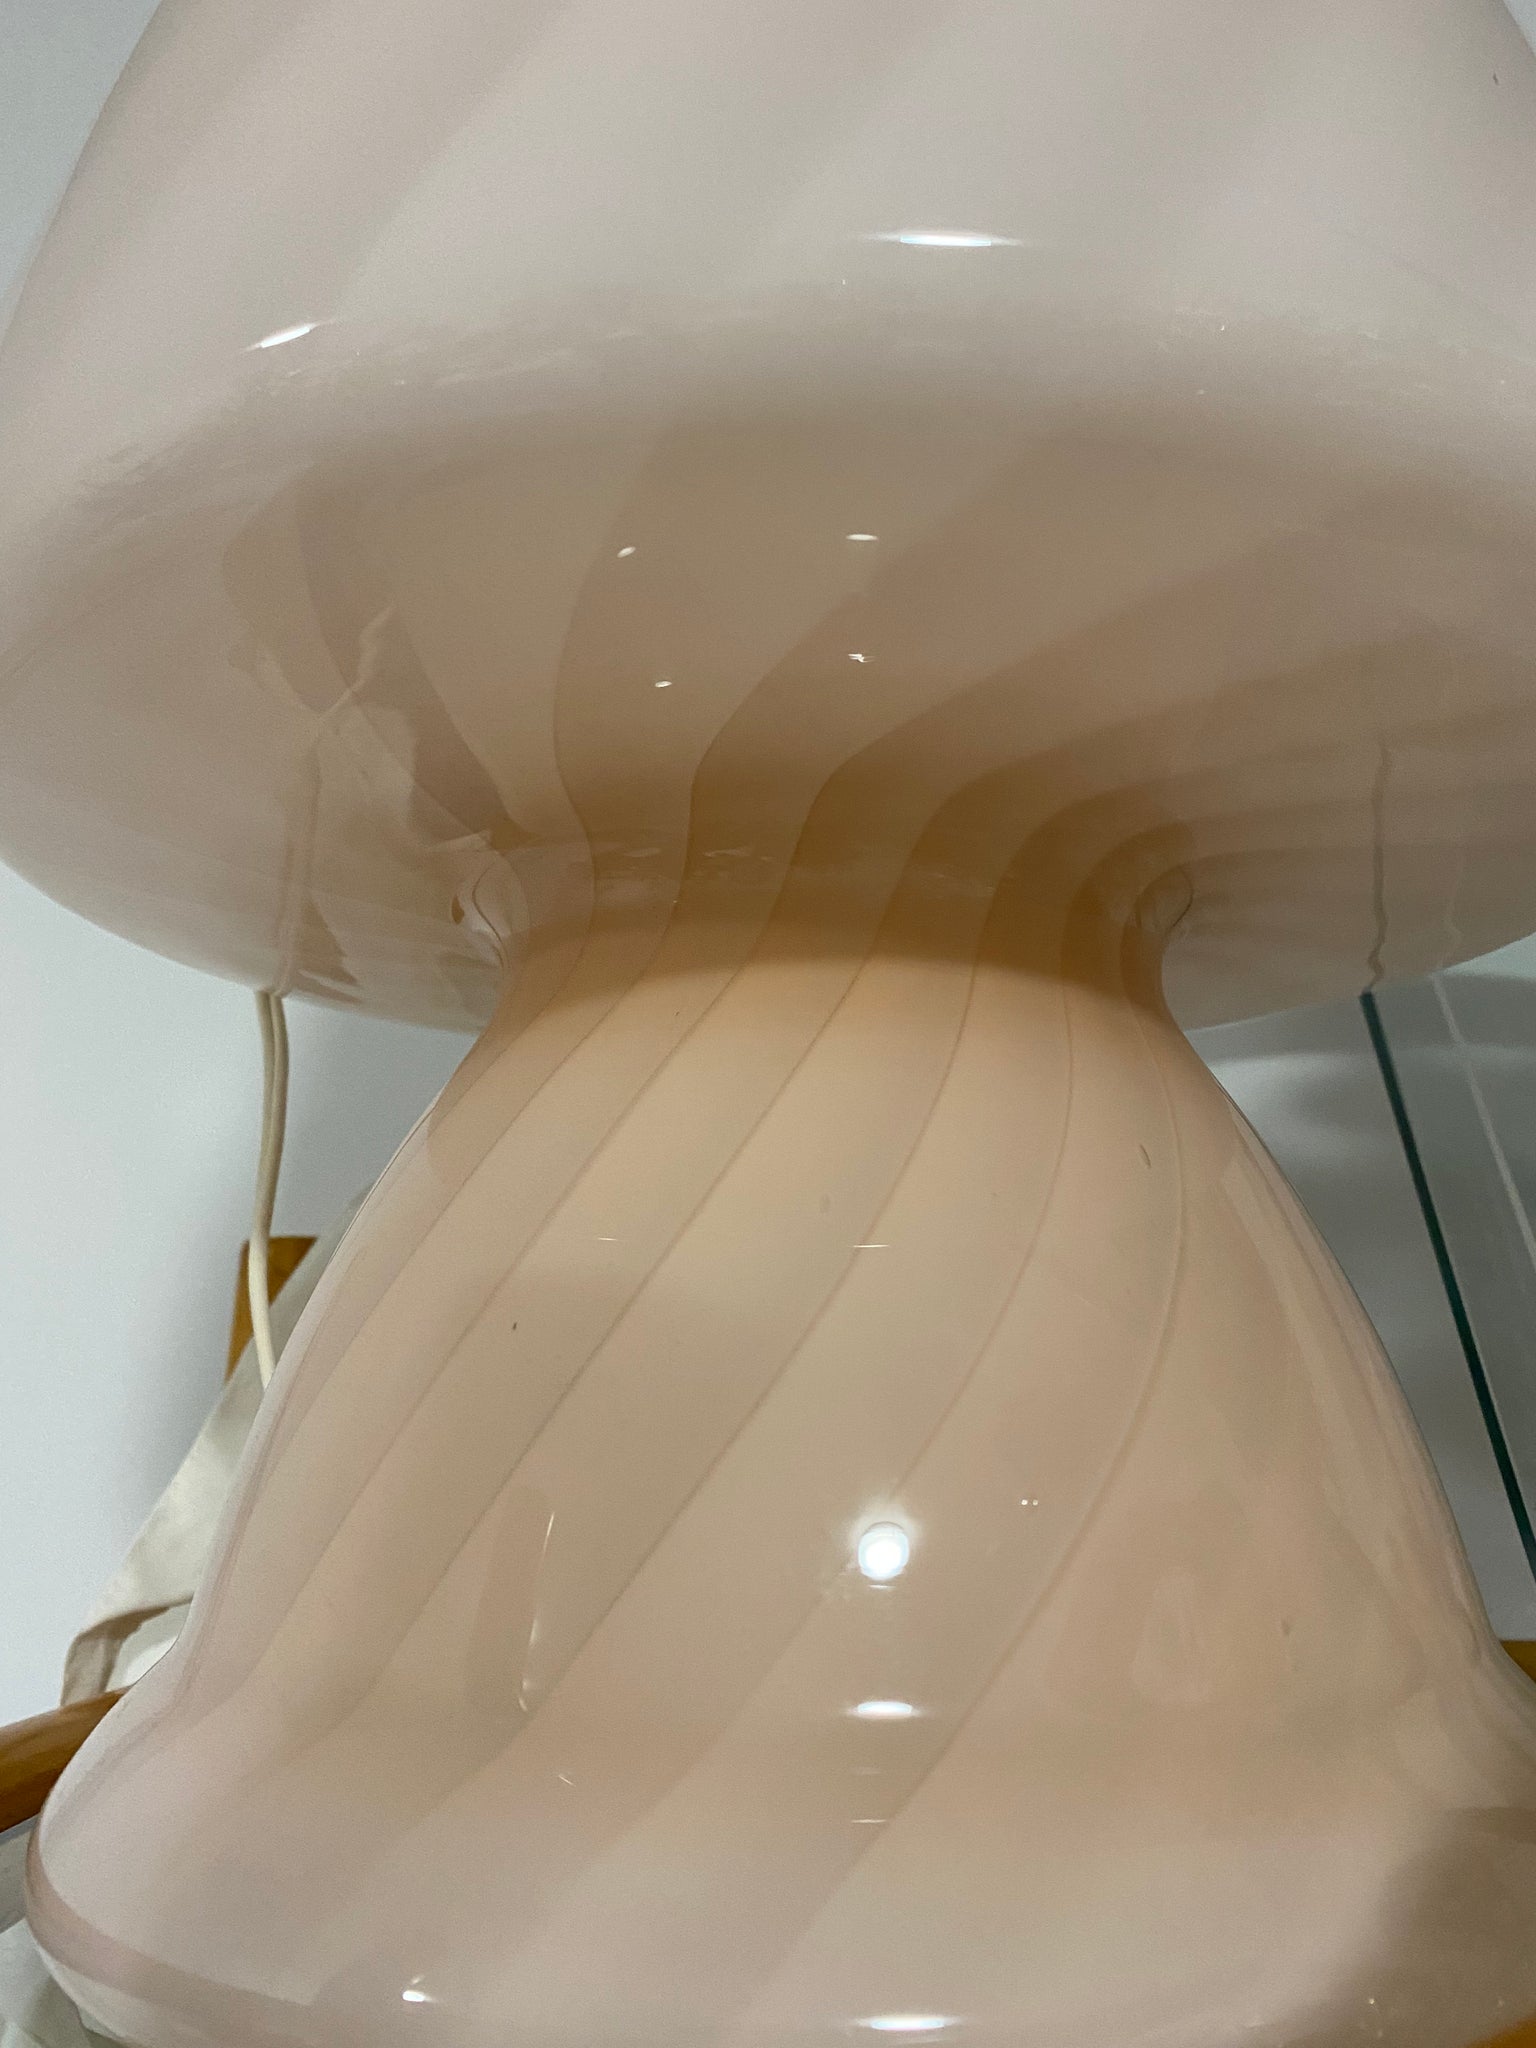 Light pink Murano glass swirl mushroom lamp